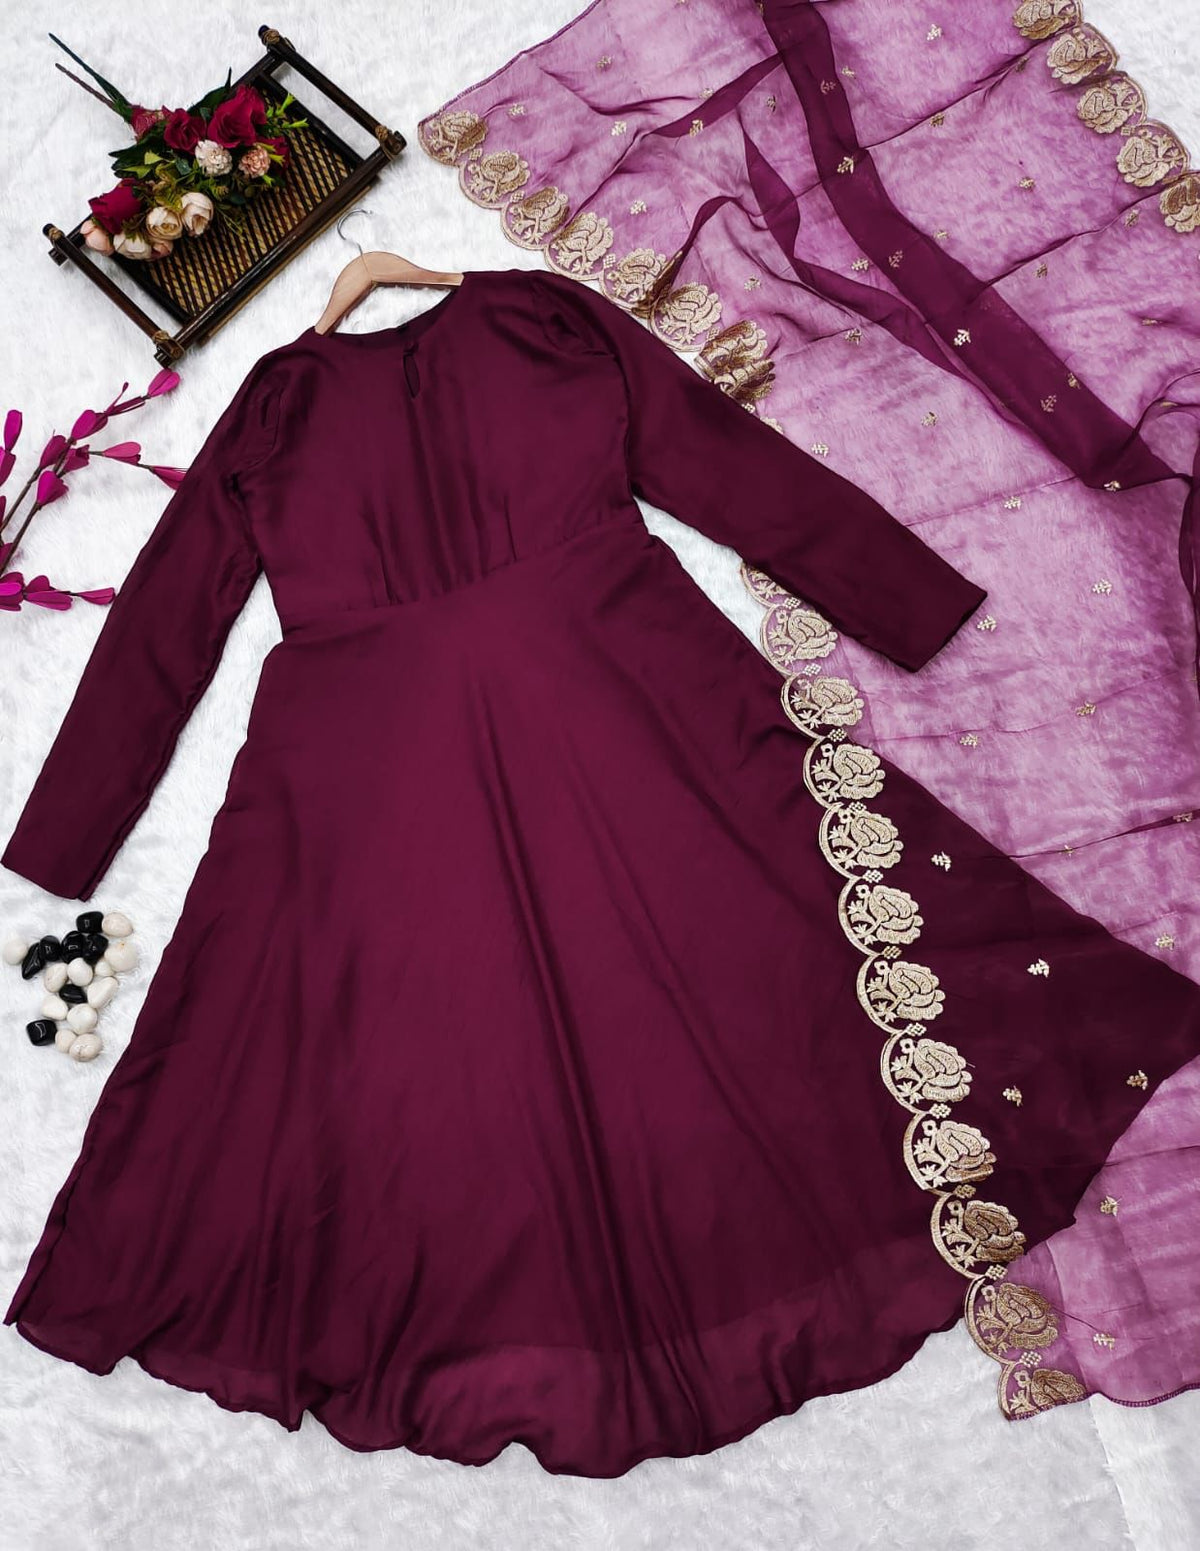 Болливудская индийская пакистанская этническая праздничная одежда женское мягкое чистое платье Vichitra с платьем Dupatta